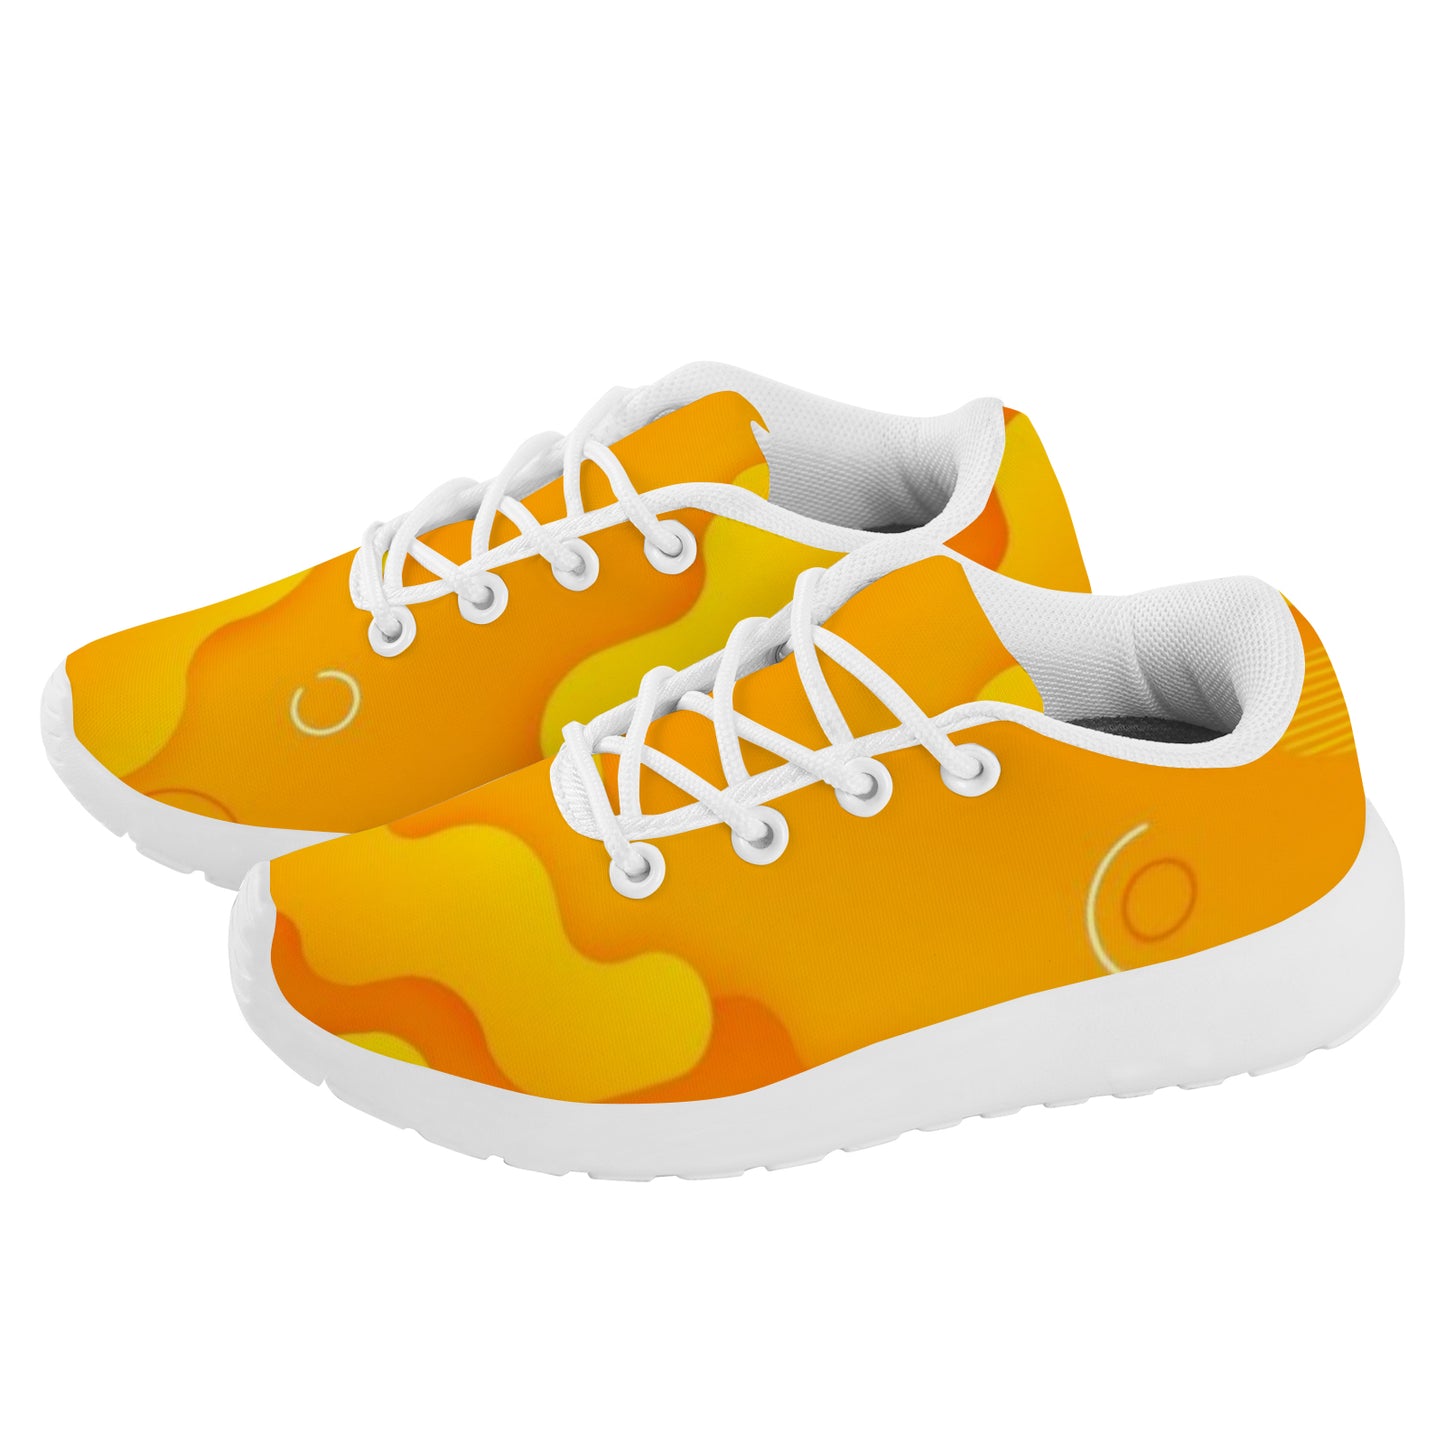 Kid's Sneakers - Electric Orange